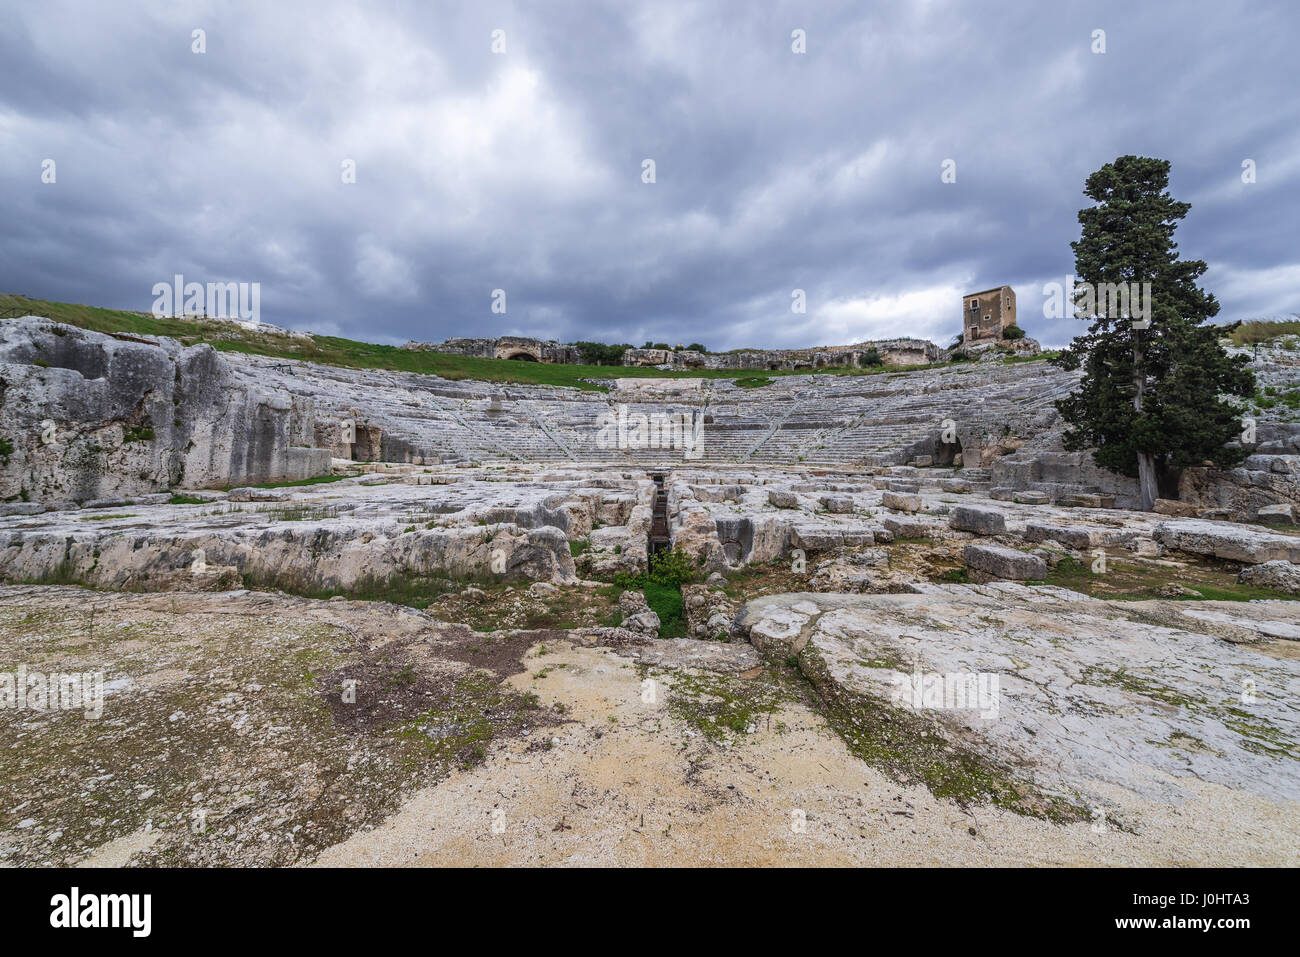 Vista sobre las antiguas ruinas del teatro griego del siglo V A.C. en el Parque Arqueológico de Neapolis, en la ciudad de Siracusa, Sicilia, Isla, Italia Foto de stock